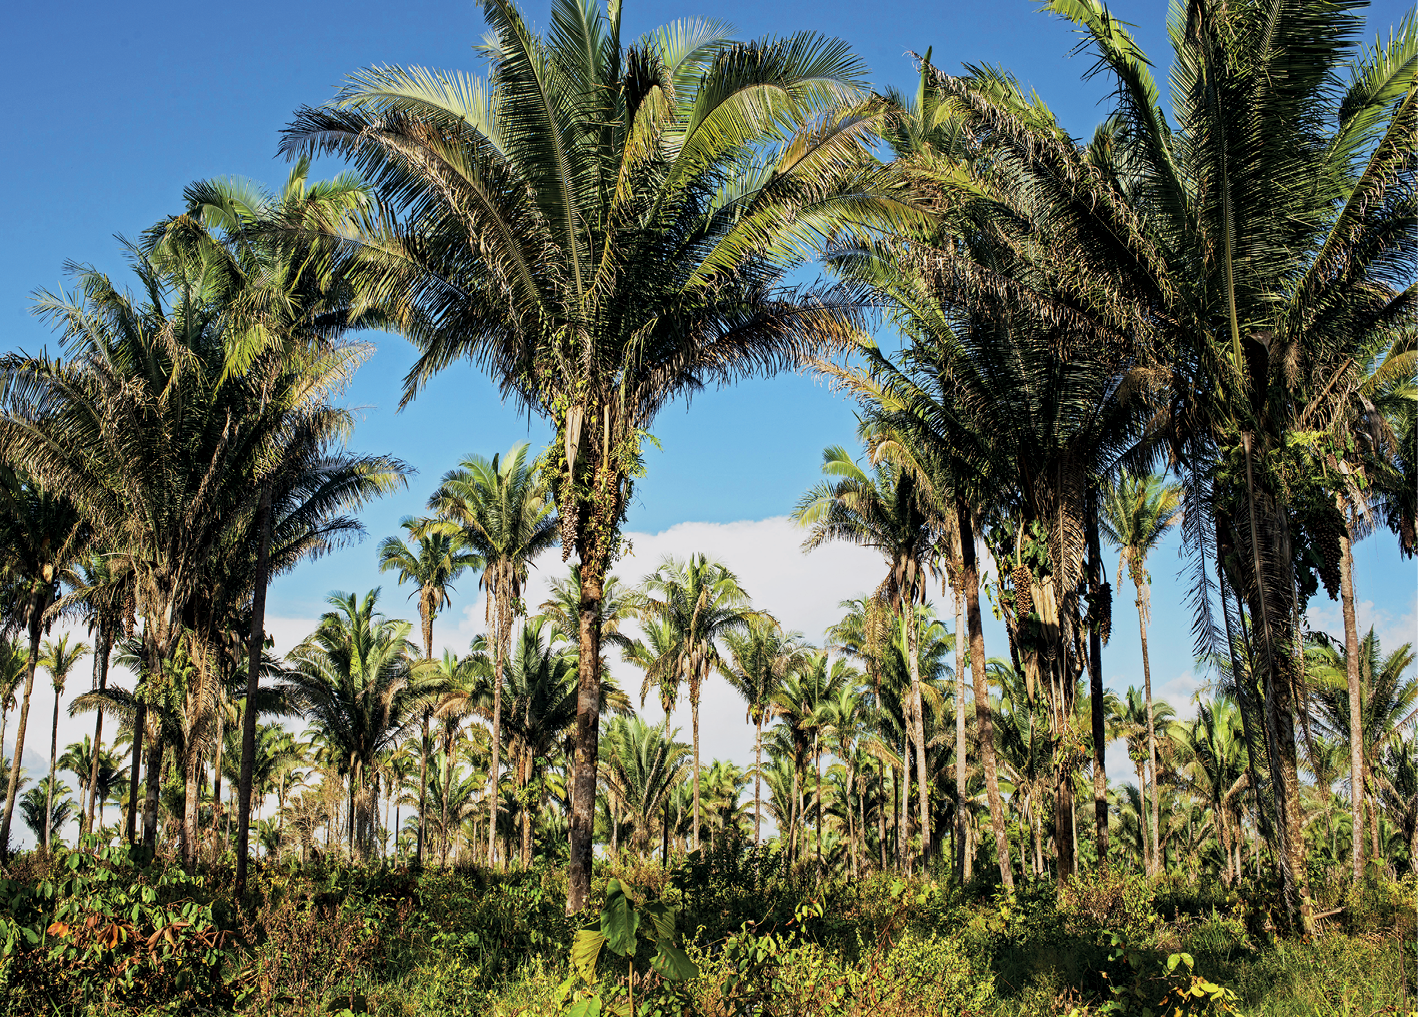 Fotografia. Vista de uma área com diversas palmeiras, árvores com troncos finos e copas com folhas longos voltadas para cima.